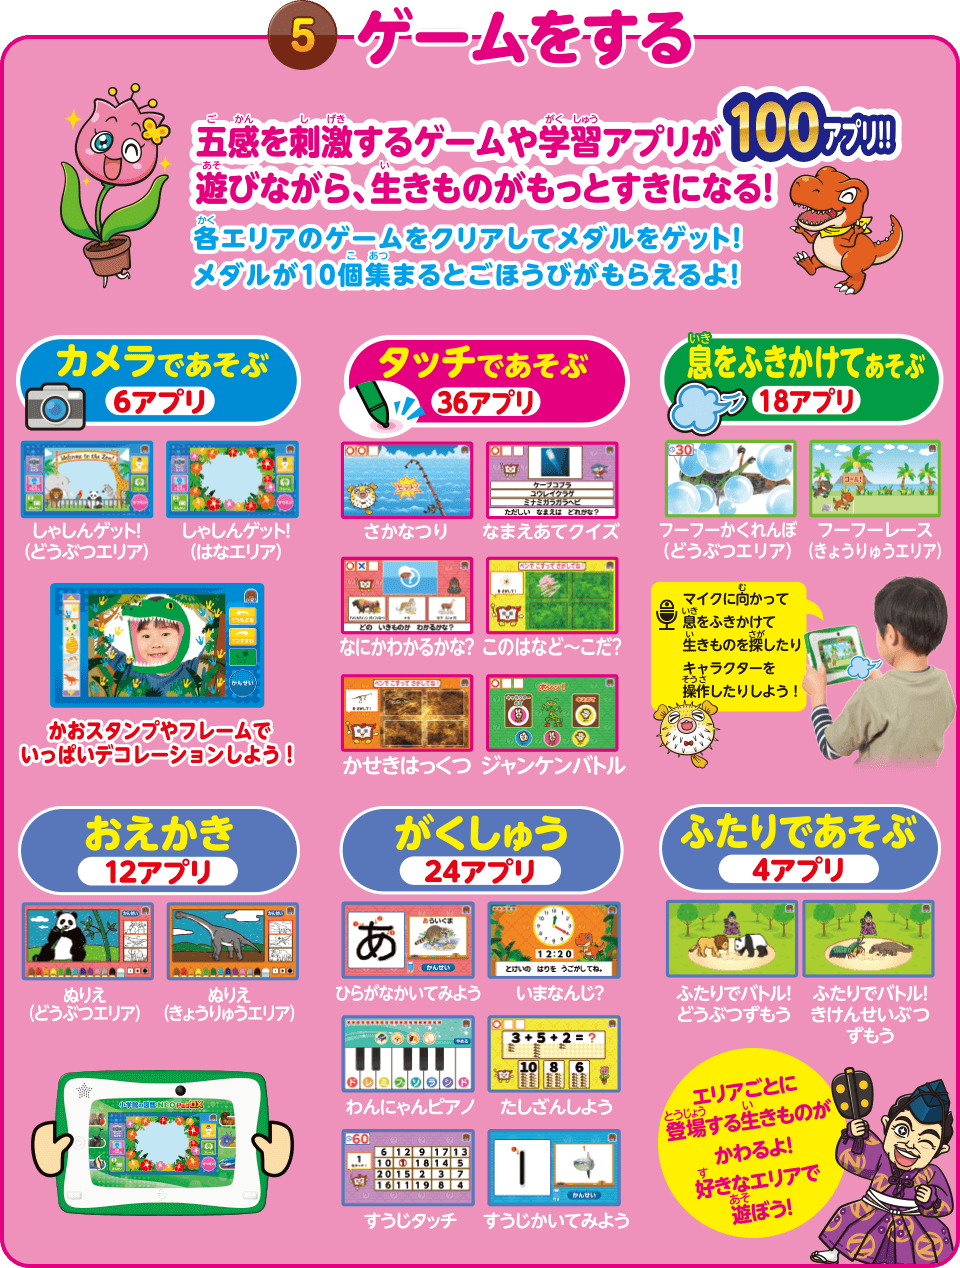 グッチ 新品☆ 小学館の図鑑　NEO Pad DX 知育玩具